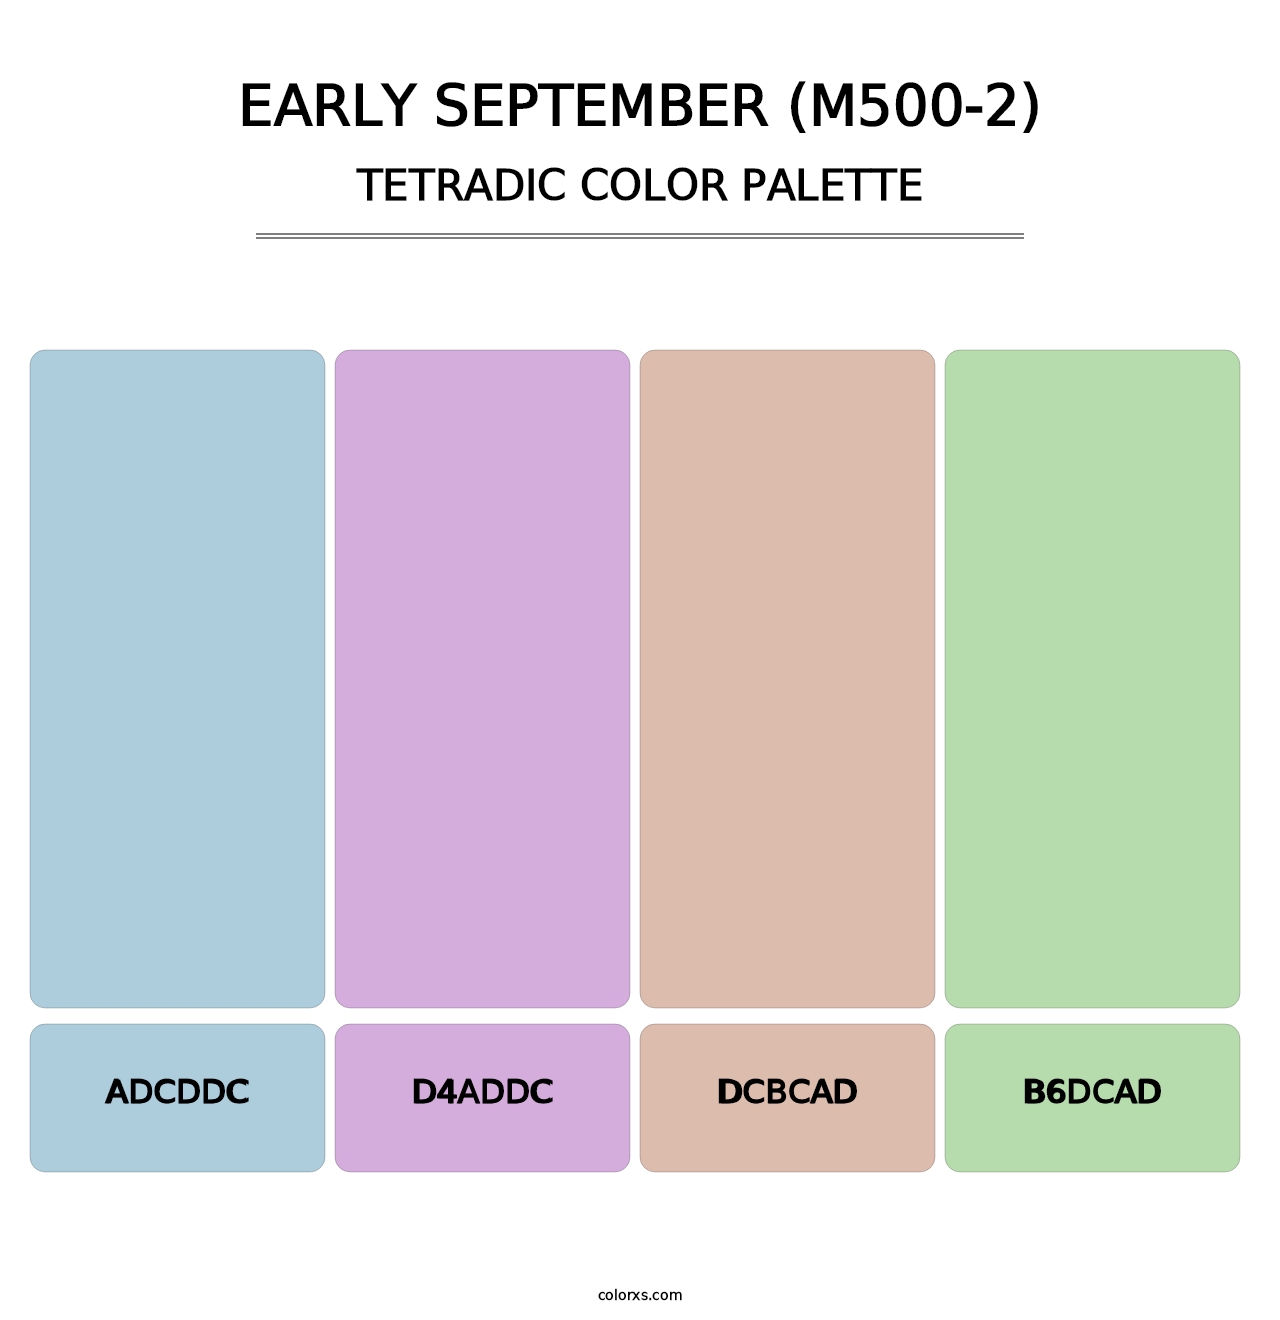 Early September (M500-2) - Tetradic Color Palette